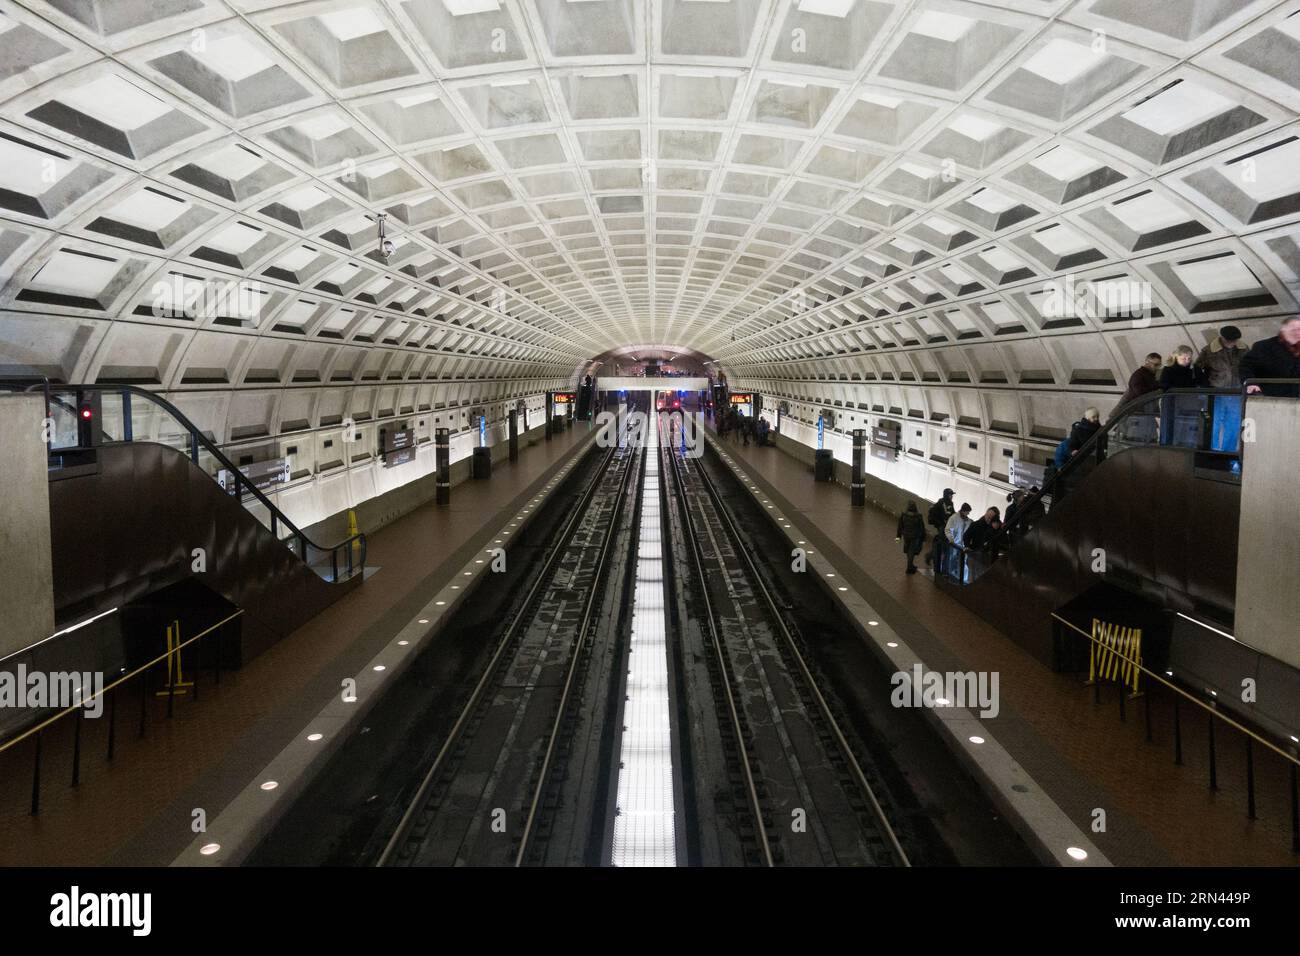 [Métro Washington DC] Subway DSC-RX100M5 | distance focale (équivalent 35 mm) : 24 mm | vitesse d'obturation : ¹⁄₃₀ sec | ouverture : ƒ / 4,0 | ISO 2500 | biais d'exposition : 0 EV Banque D'Images